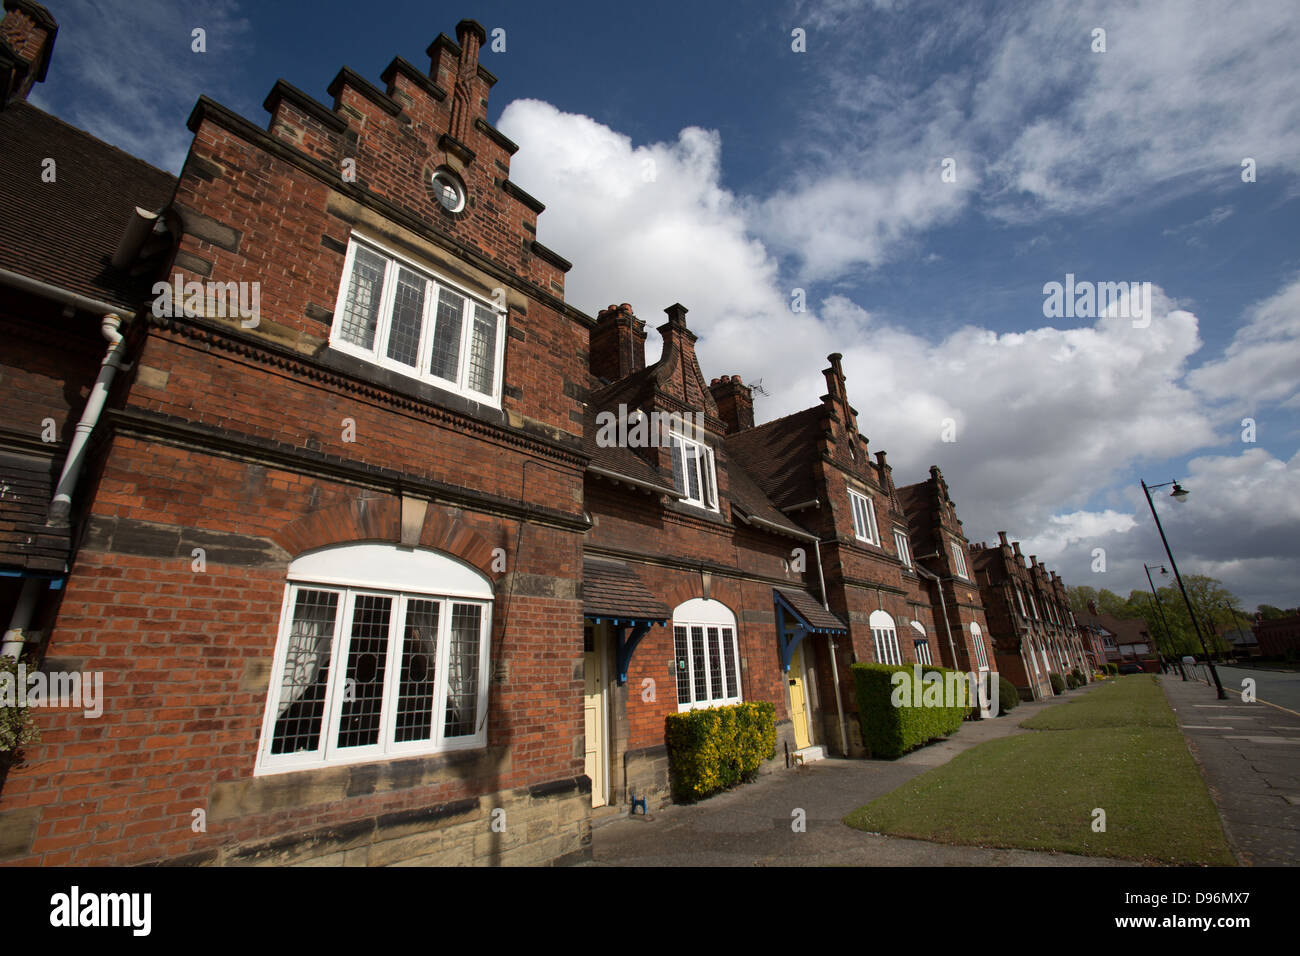 Village de Port Sunlight, Angleterre. vue pittoresque de wood street cottages à port sunlight. Banque D'Images